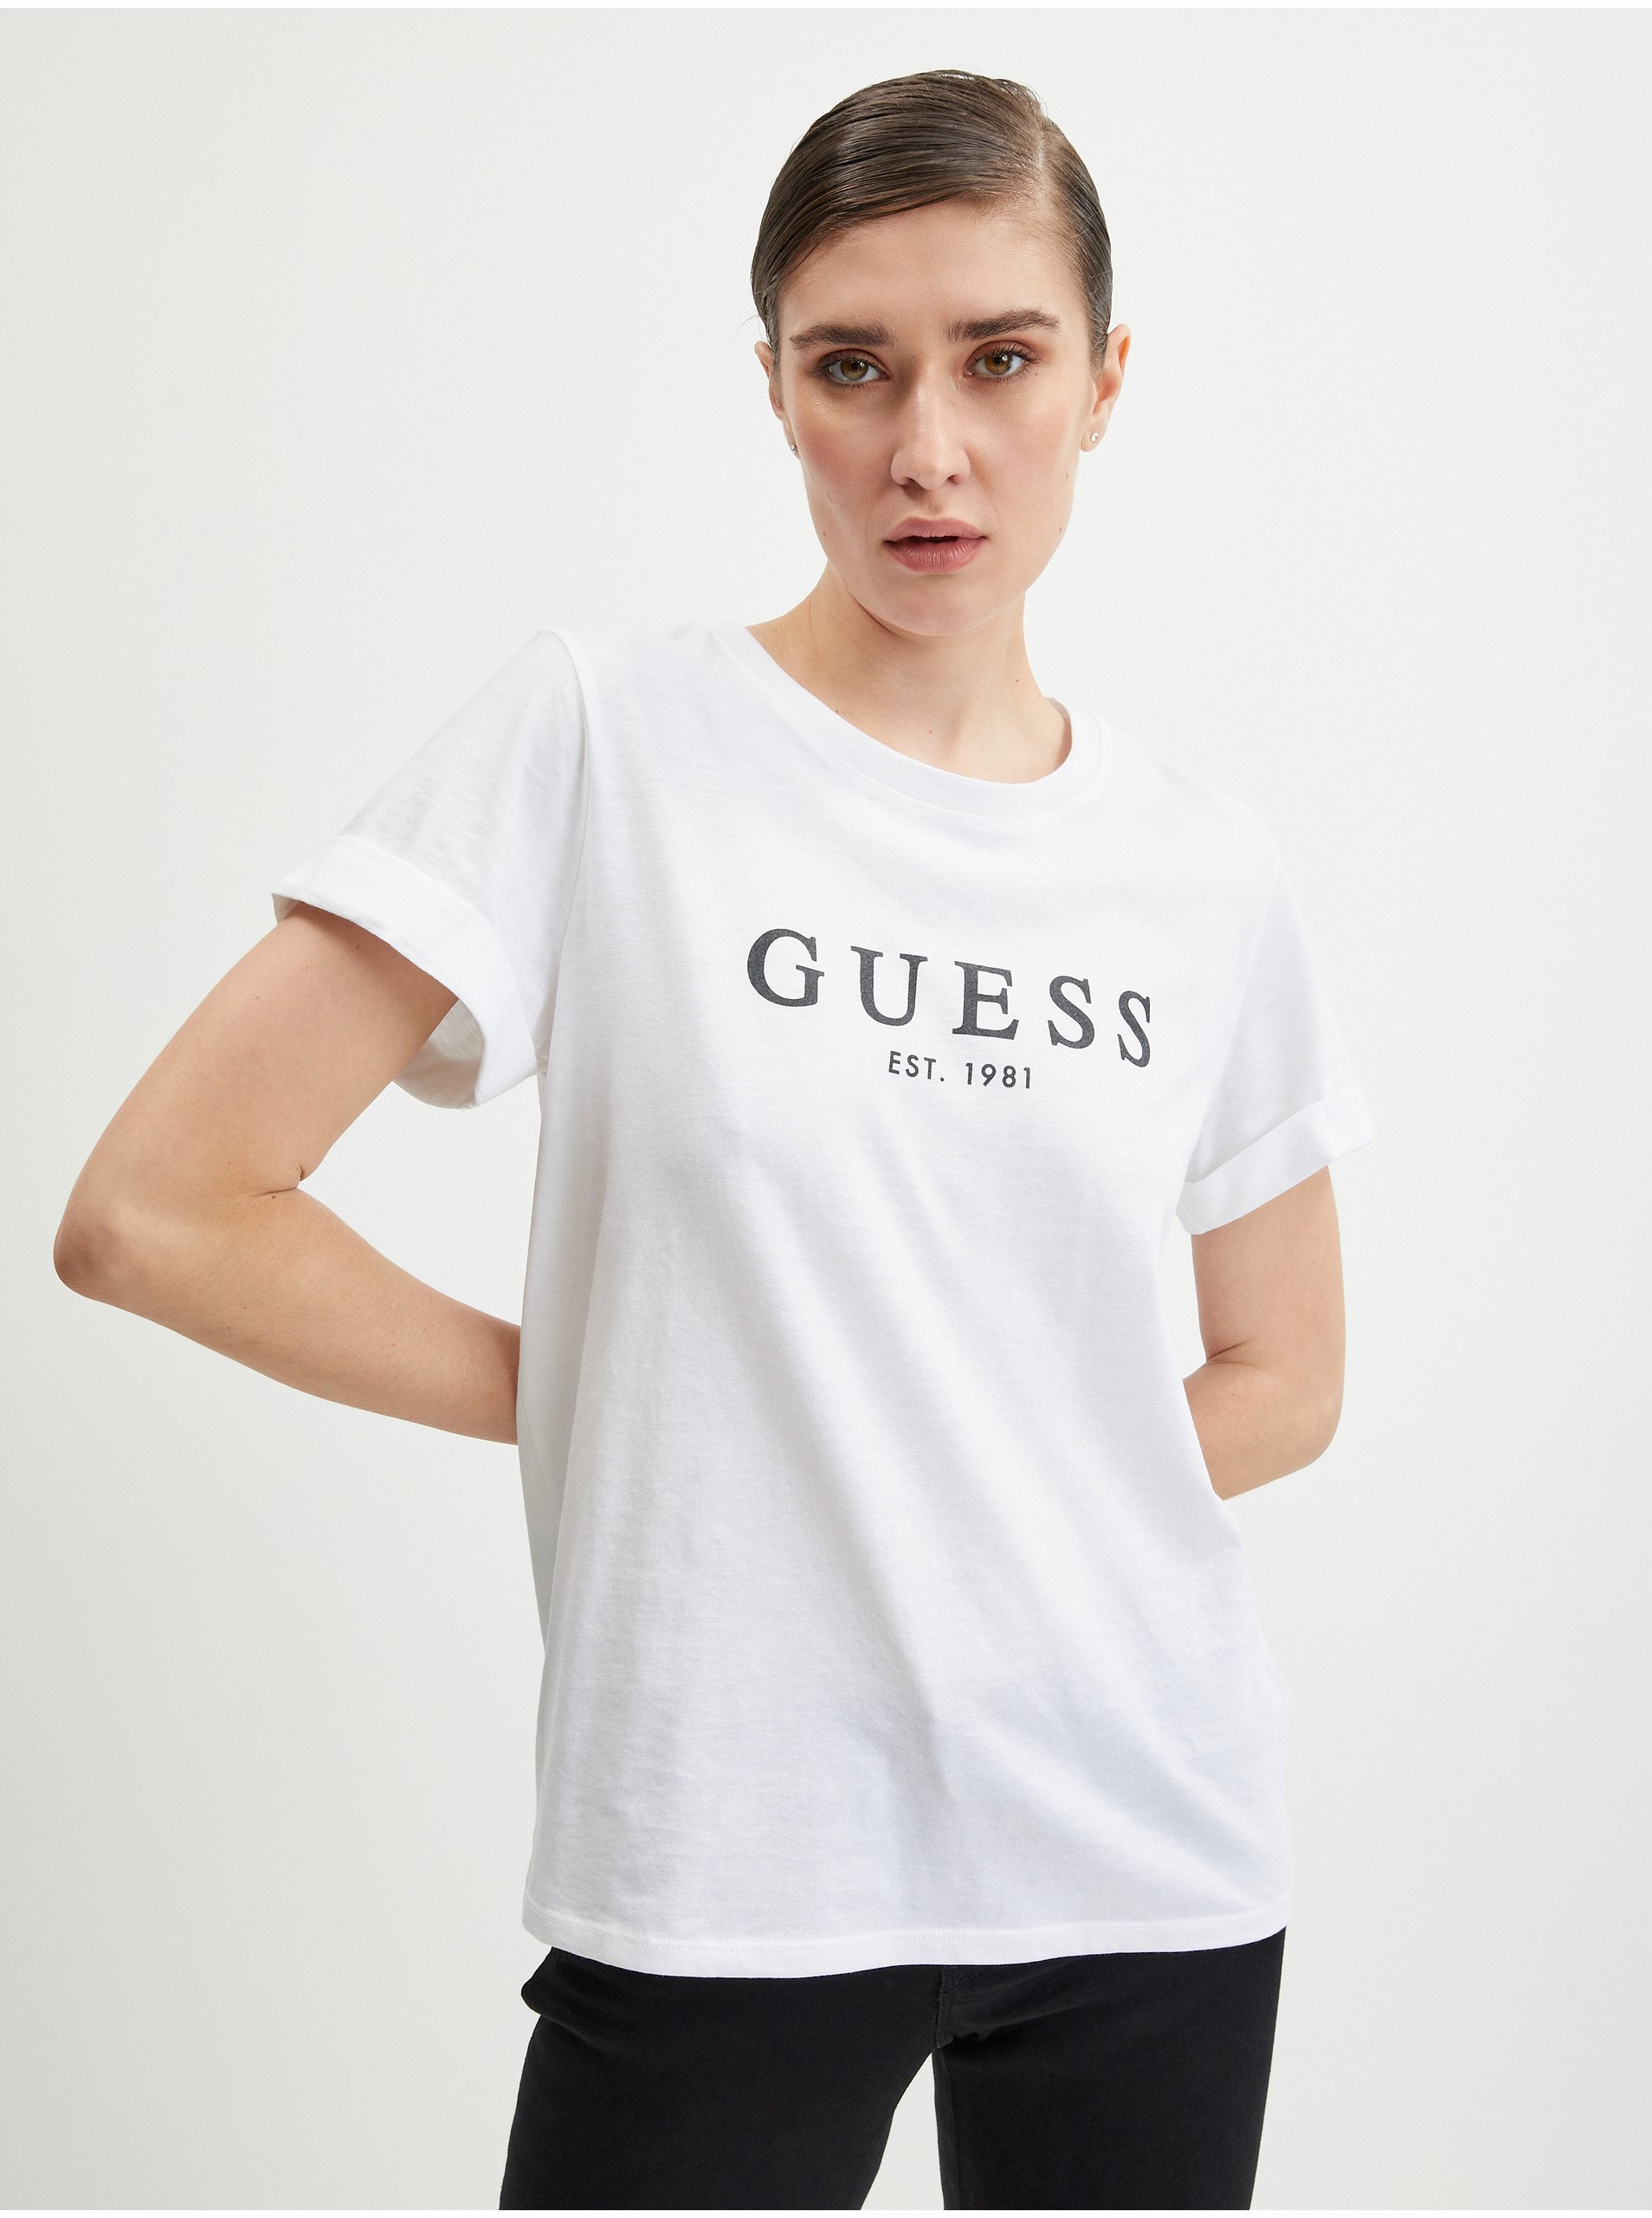 E-shop Bílé dámské tričko Guess 1981